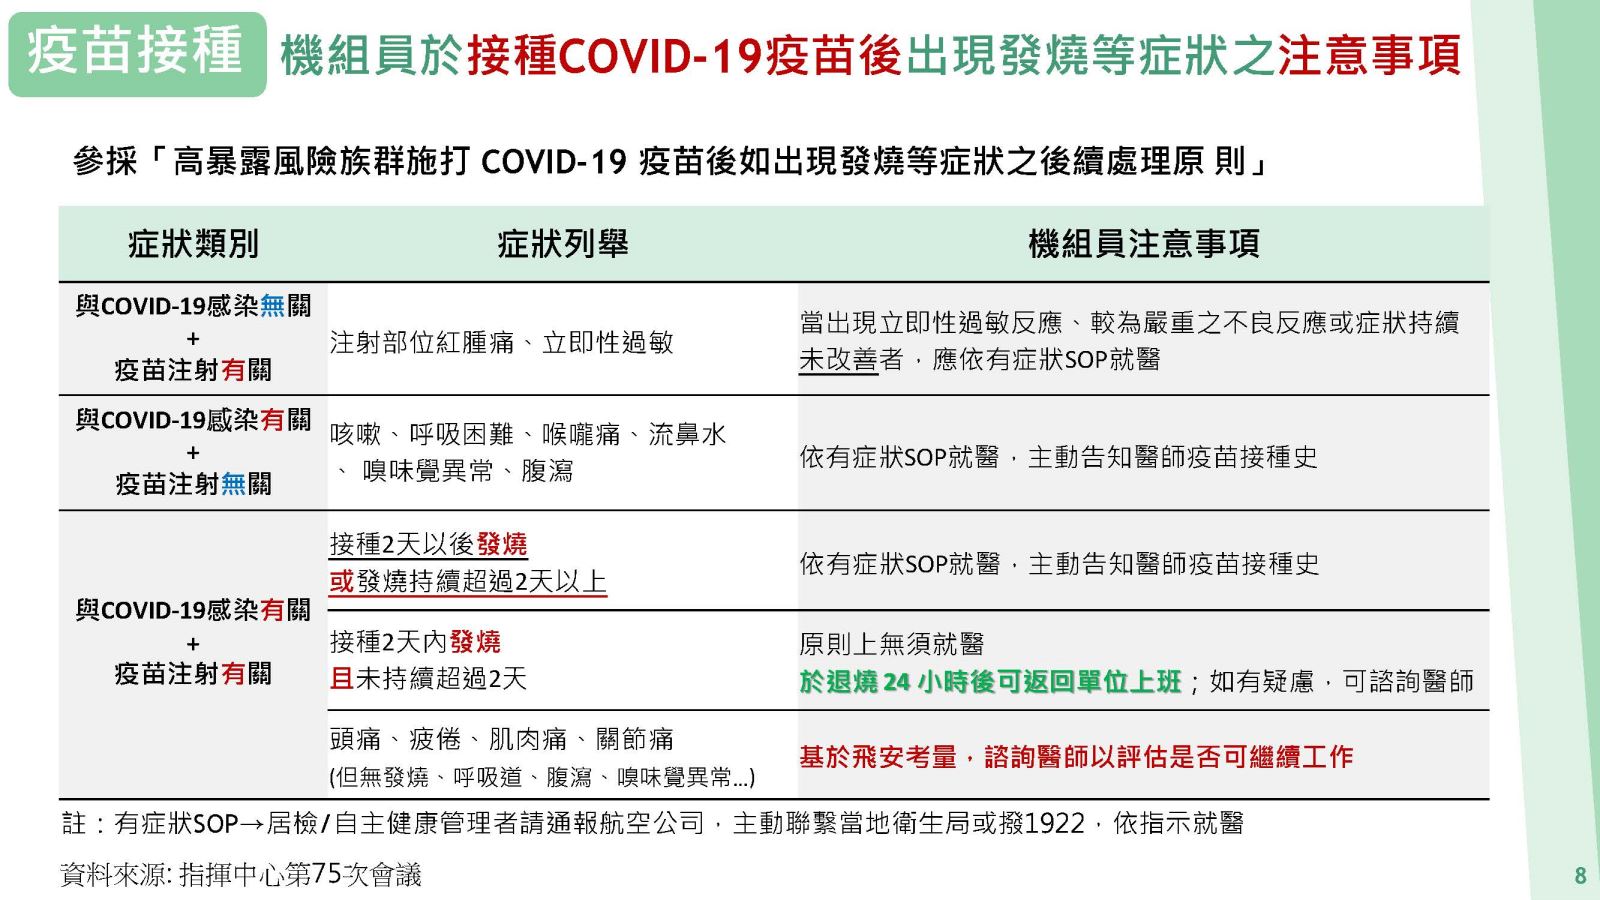 機組員於接種COVID-19疫苗後出現發燒等症狀之注意事項